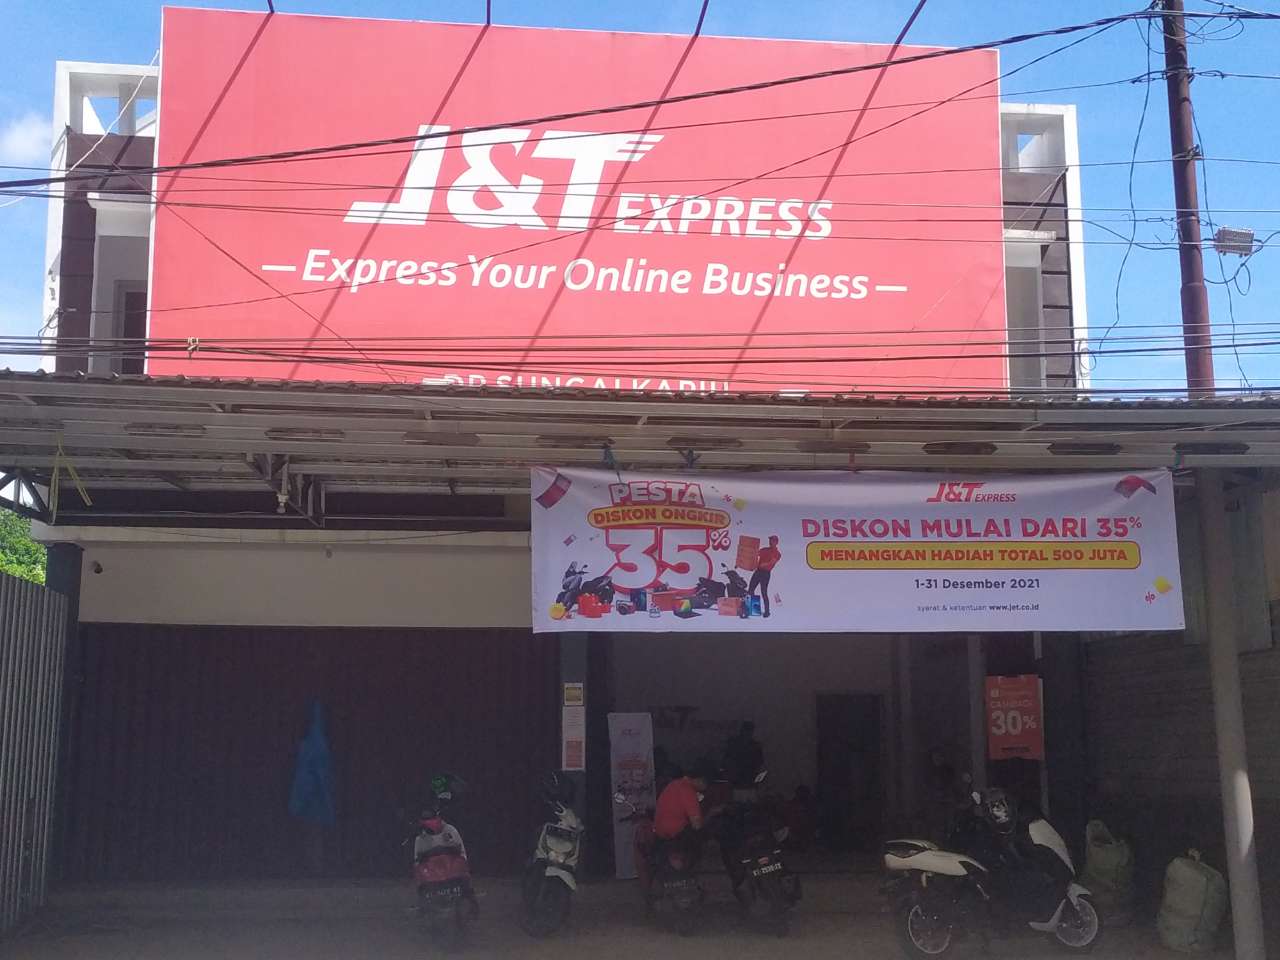 Gambar J&t Express Sungai_kapih